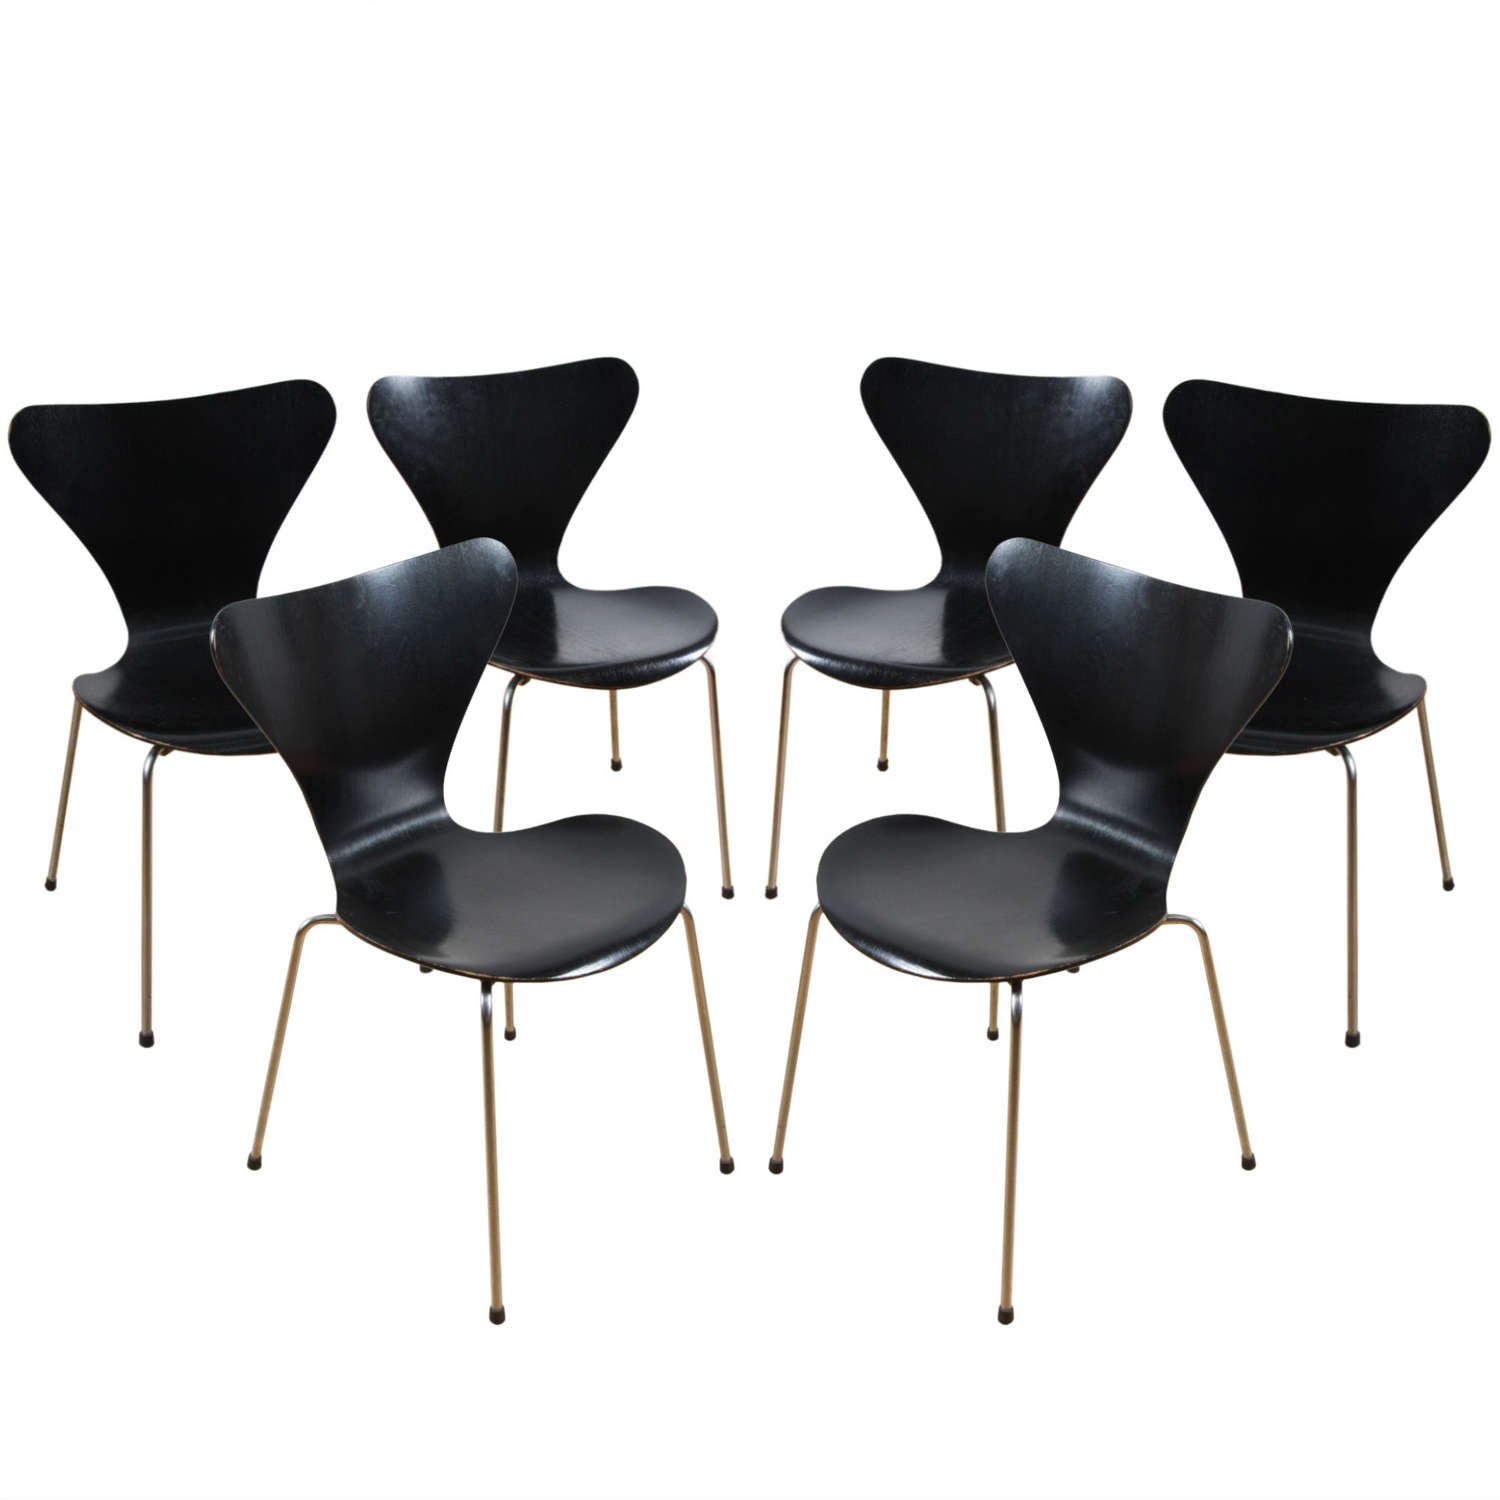 Set of 6 Black Chairs, Arne Jacobsen for Fritz Hansen